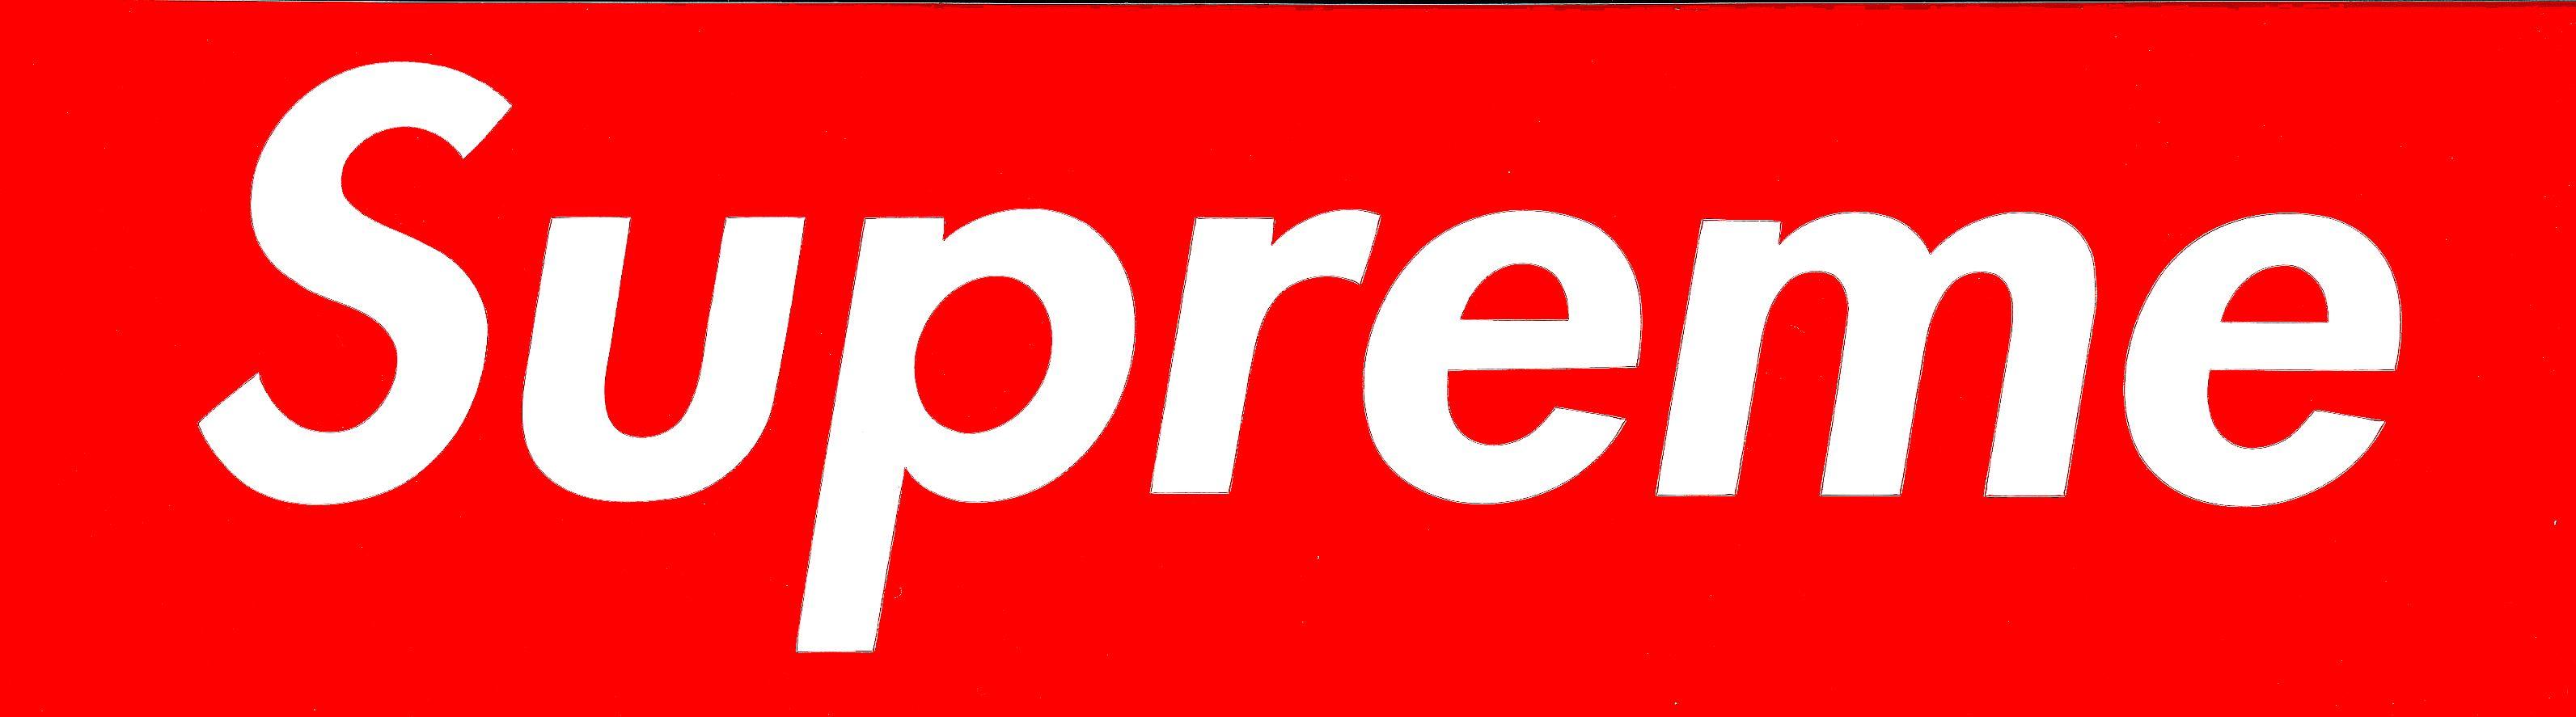 Large Supreme Logo - Supreme box Logos